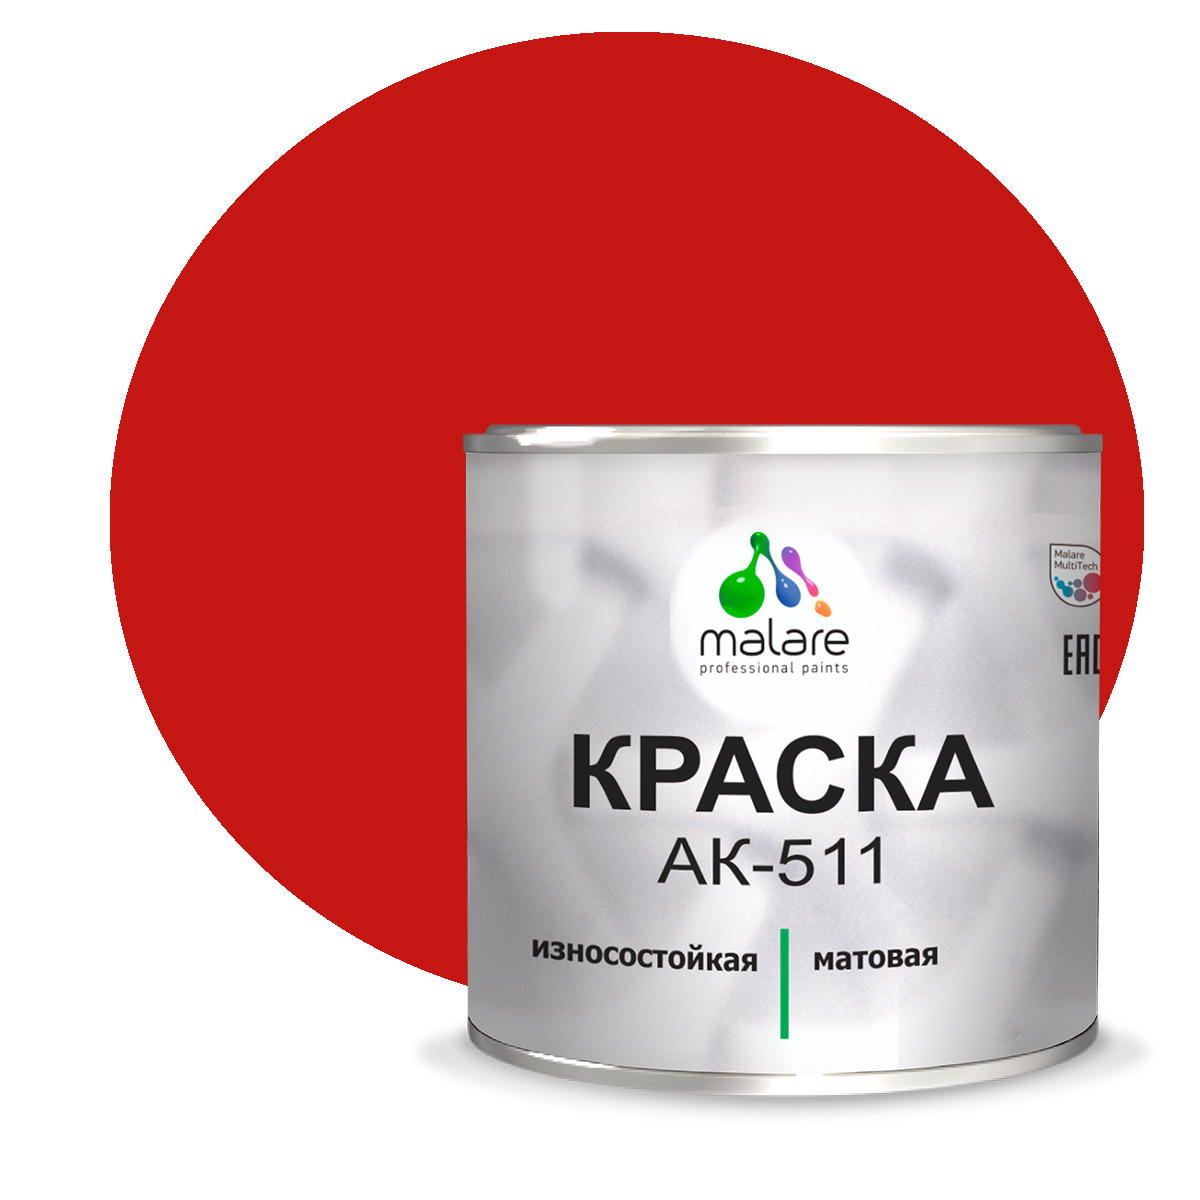 Краска Malare АК-511 для дорожной разметки для пола RAL 3020 красный 2,5 кг. краска ак 511 для дорожной разметки желтая 25кг гост 32830 2014